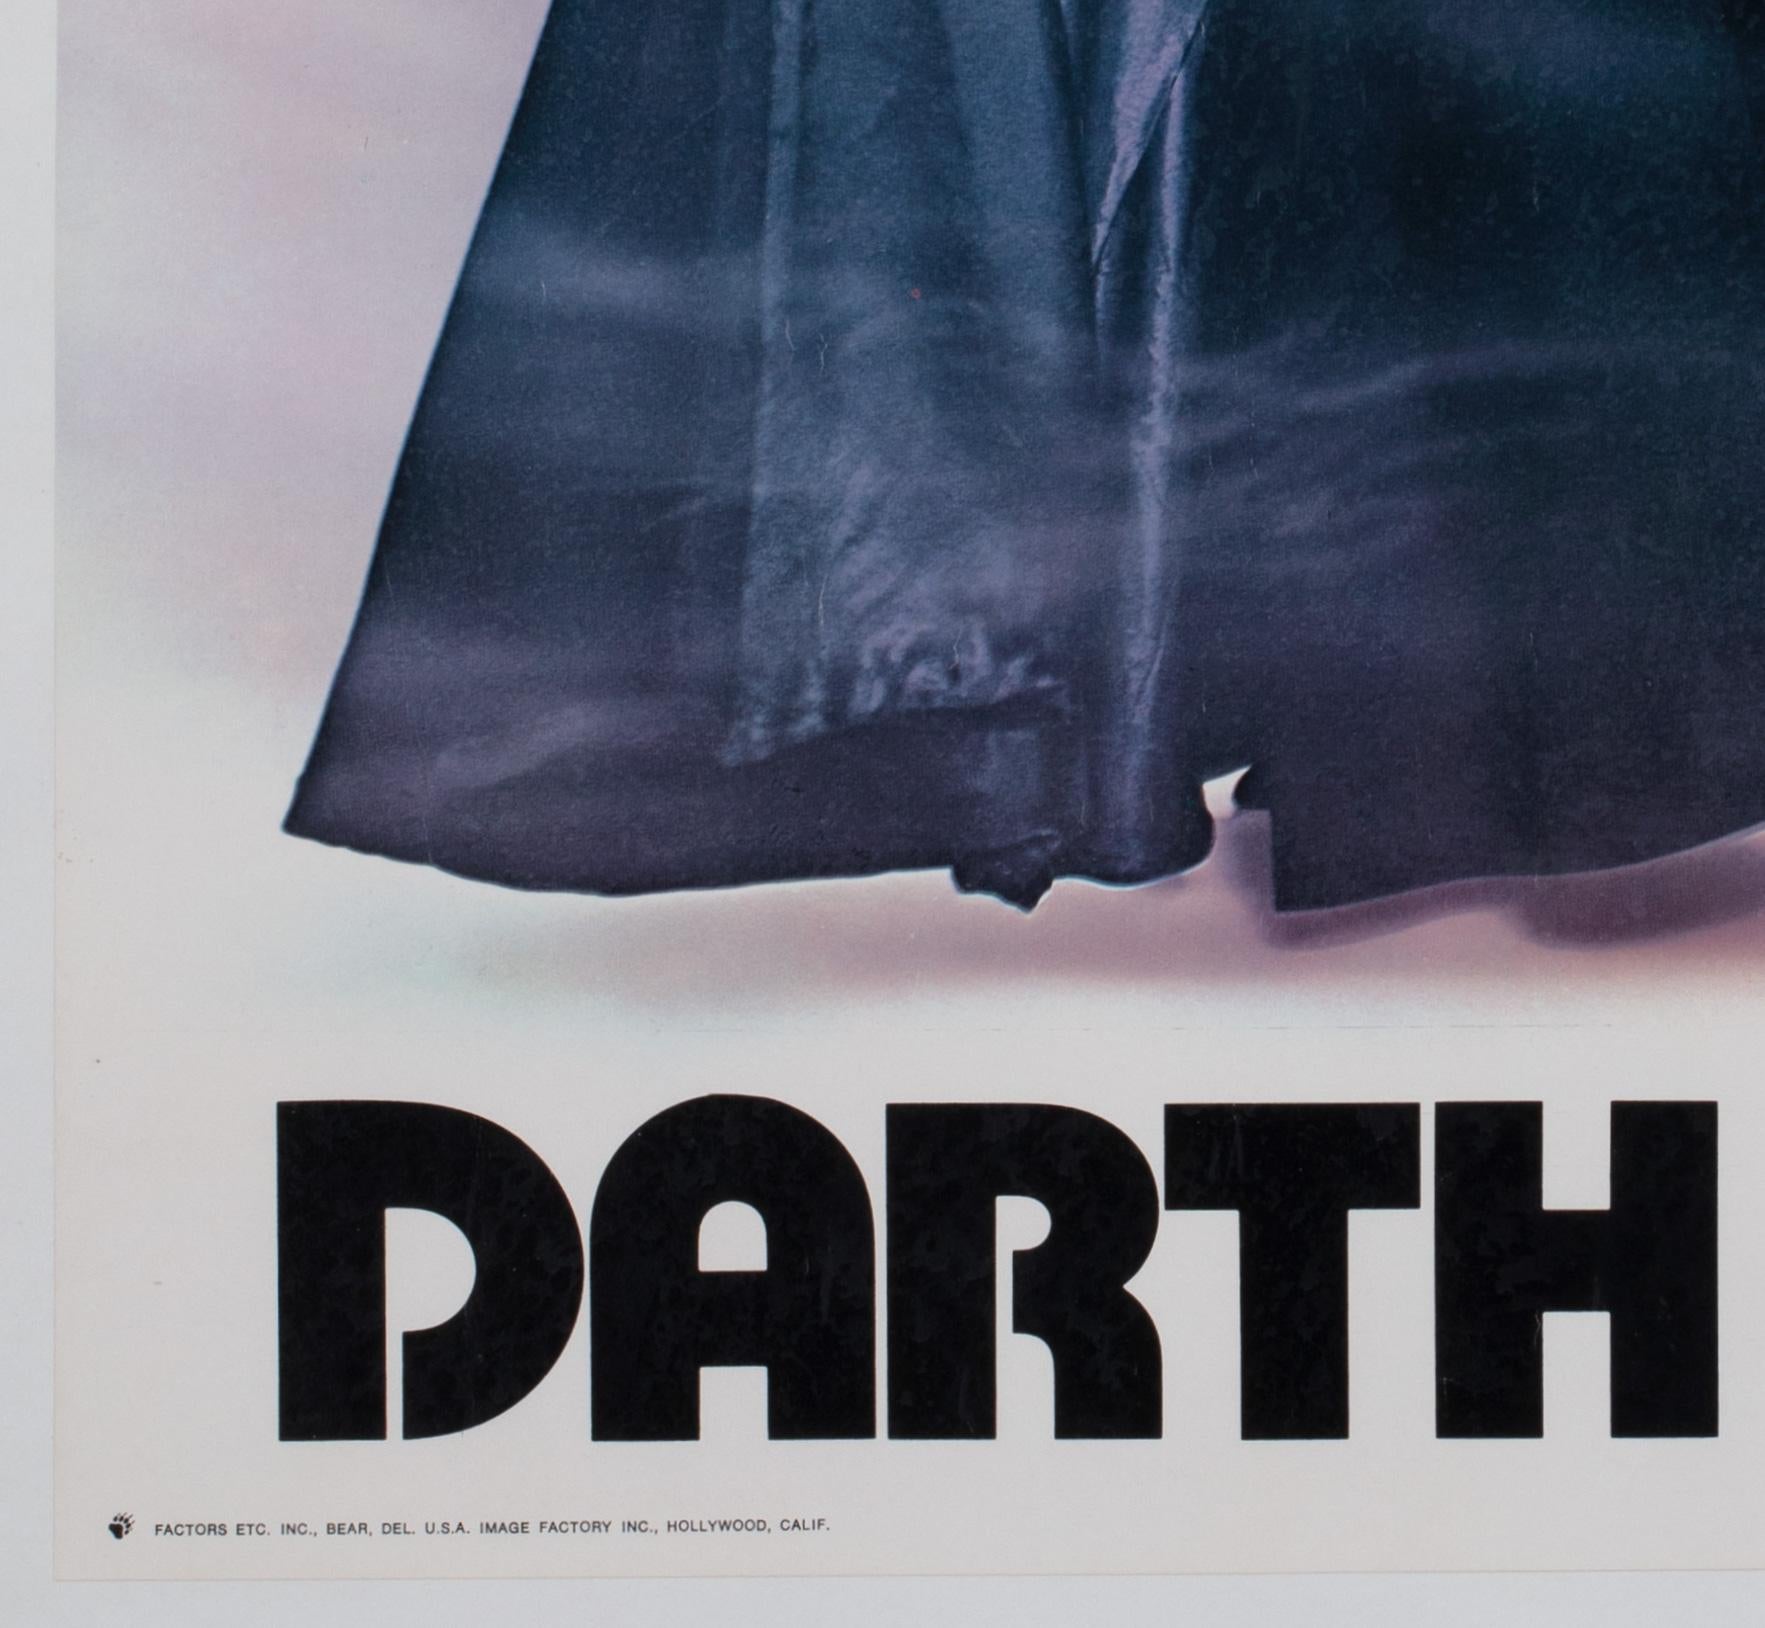 Paper Star Wars Darth Vader 1977 Vintage Factor Inc Commercial Poster For Sale